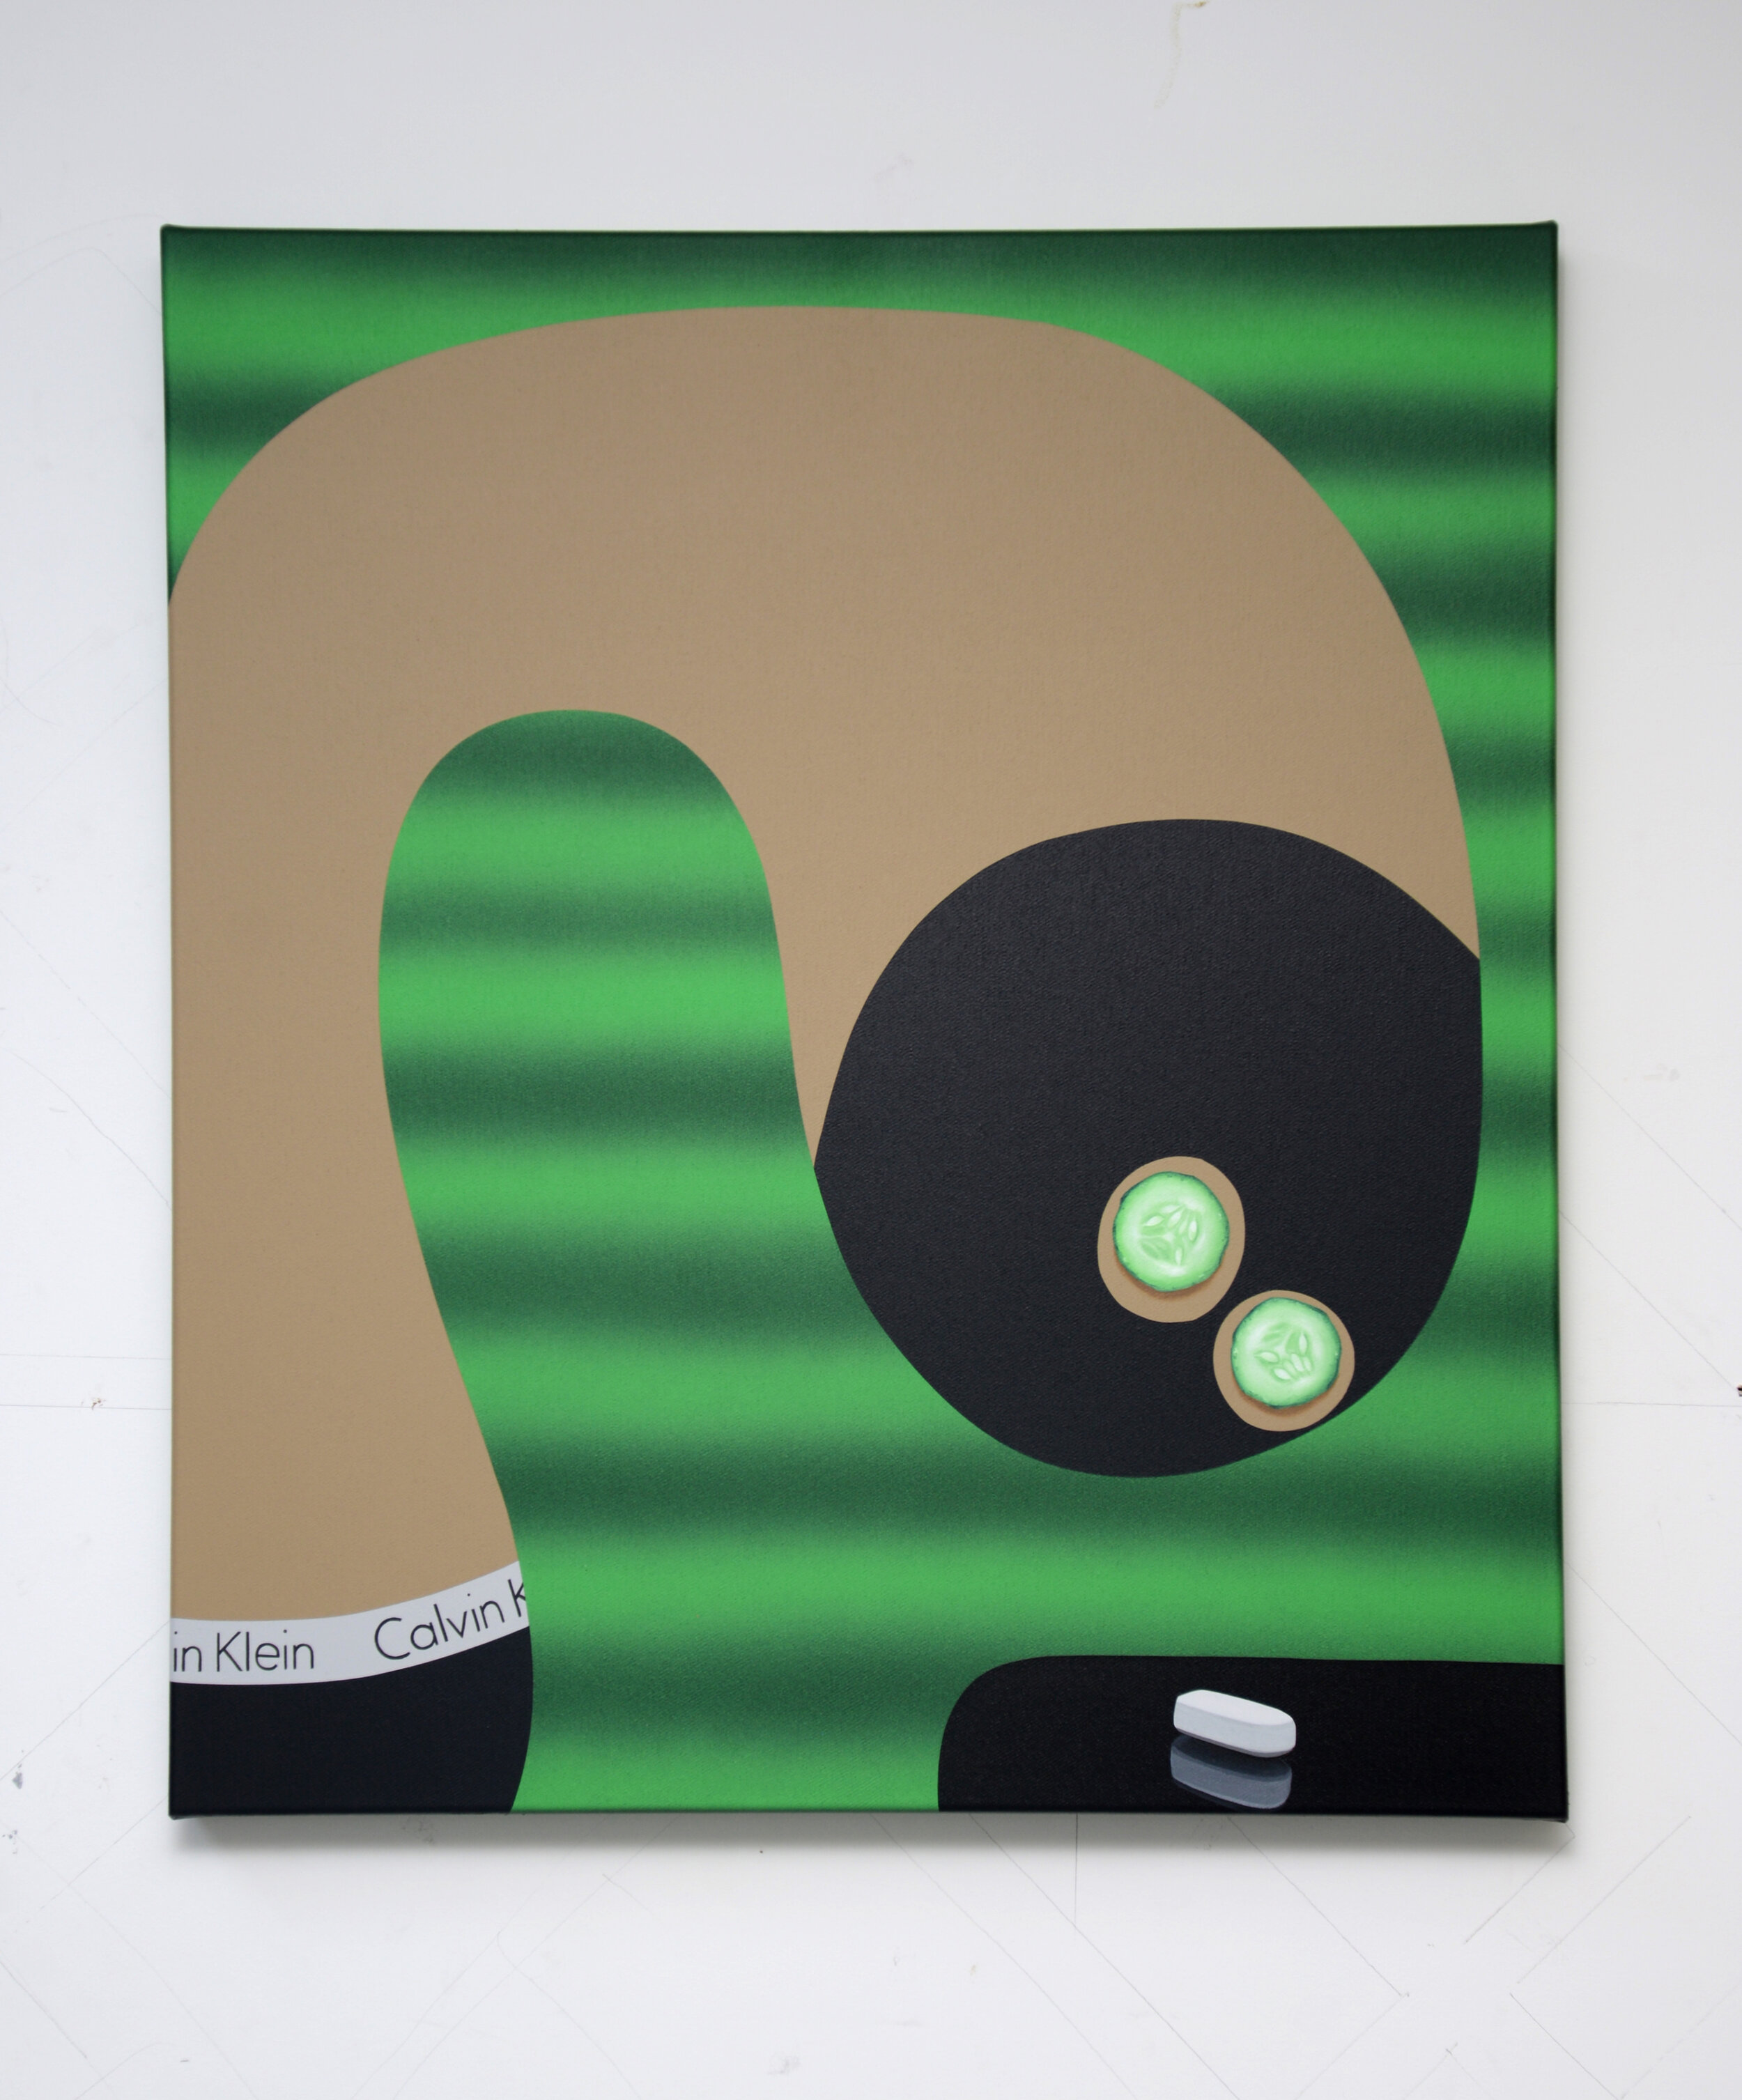 'Paracetamol', 2019, oil and acrylic on canvas, 55cm x 60cm